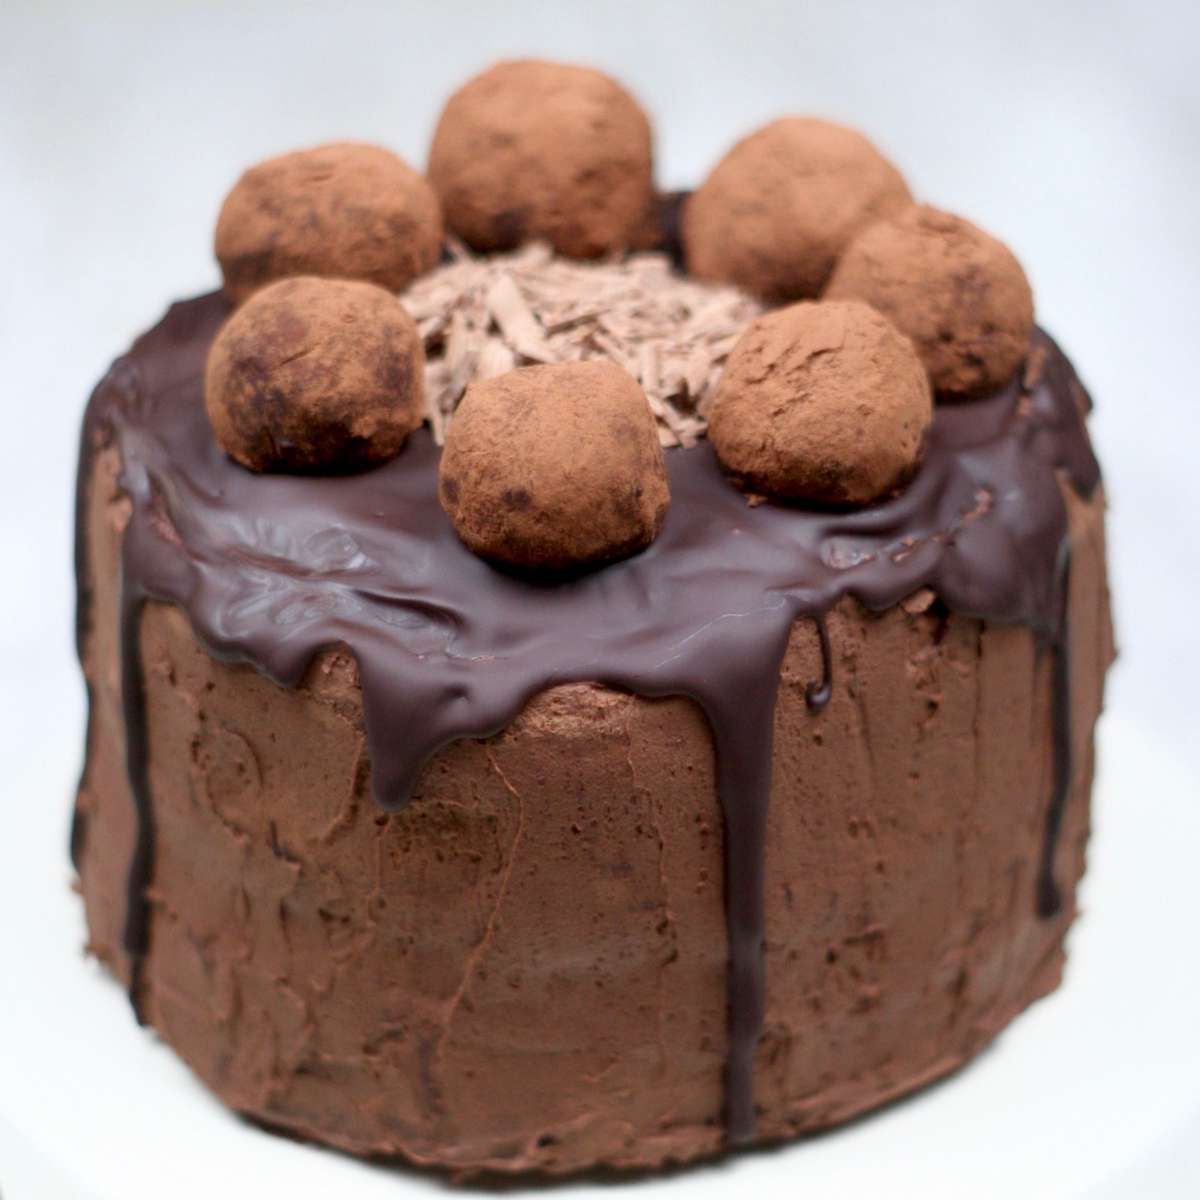 Tort czekoladowy z kremem czekoladowym i pralinami według przepisu z 1920 r.